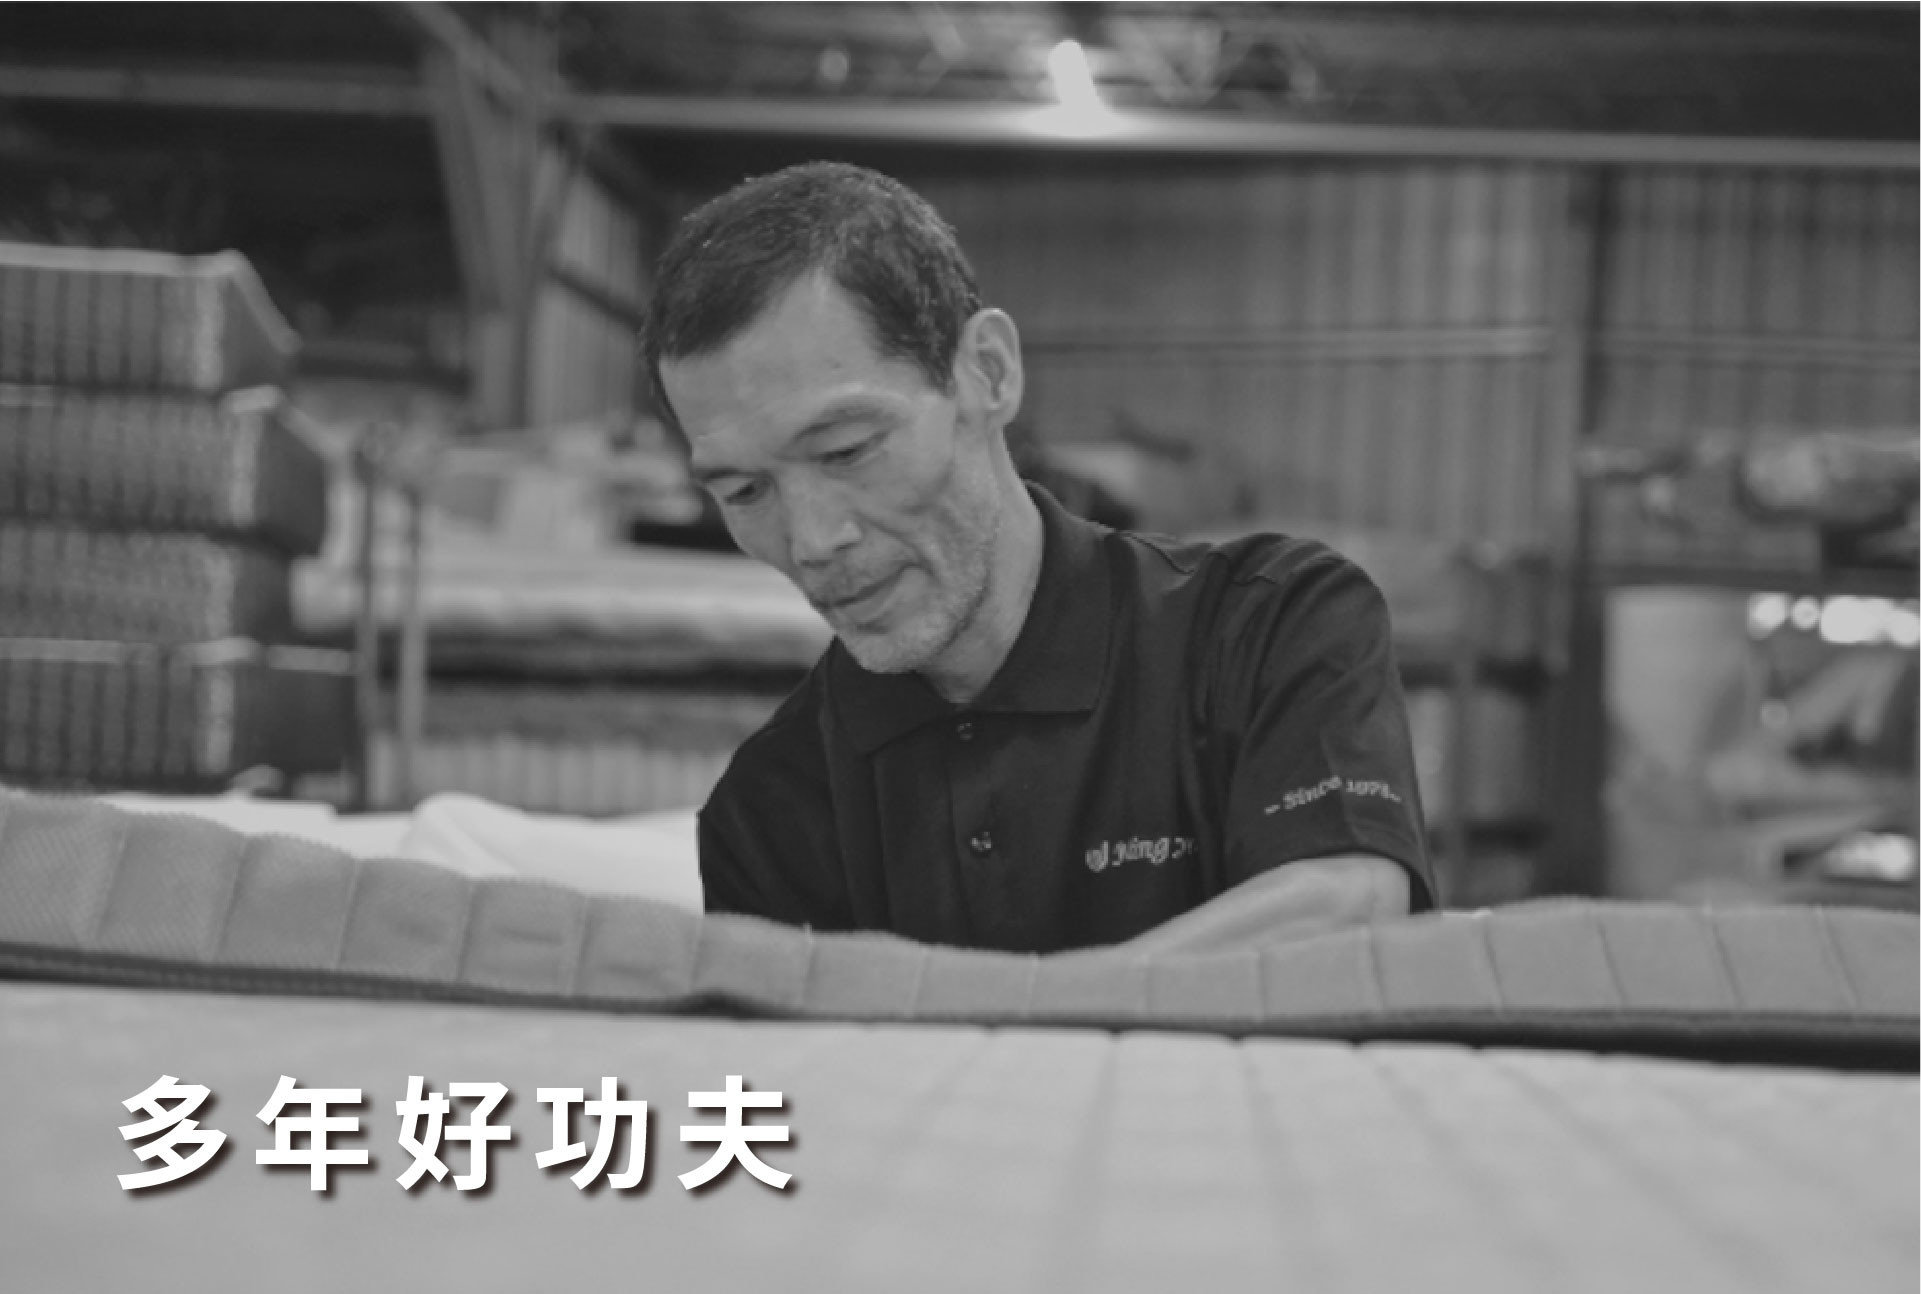 明久床墊製作工藝，師承60年經驗老師傅。